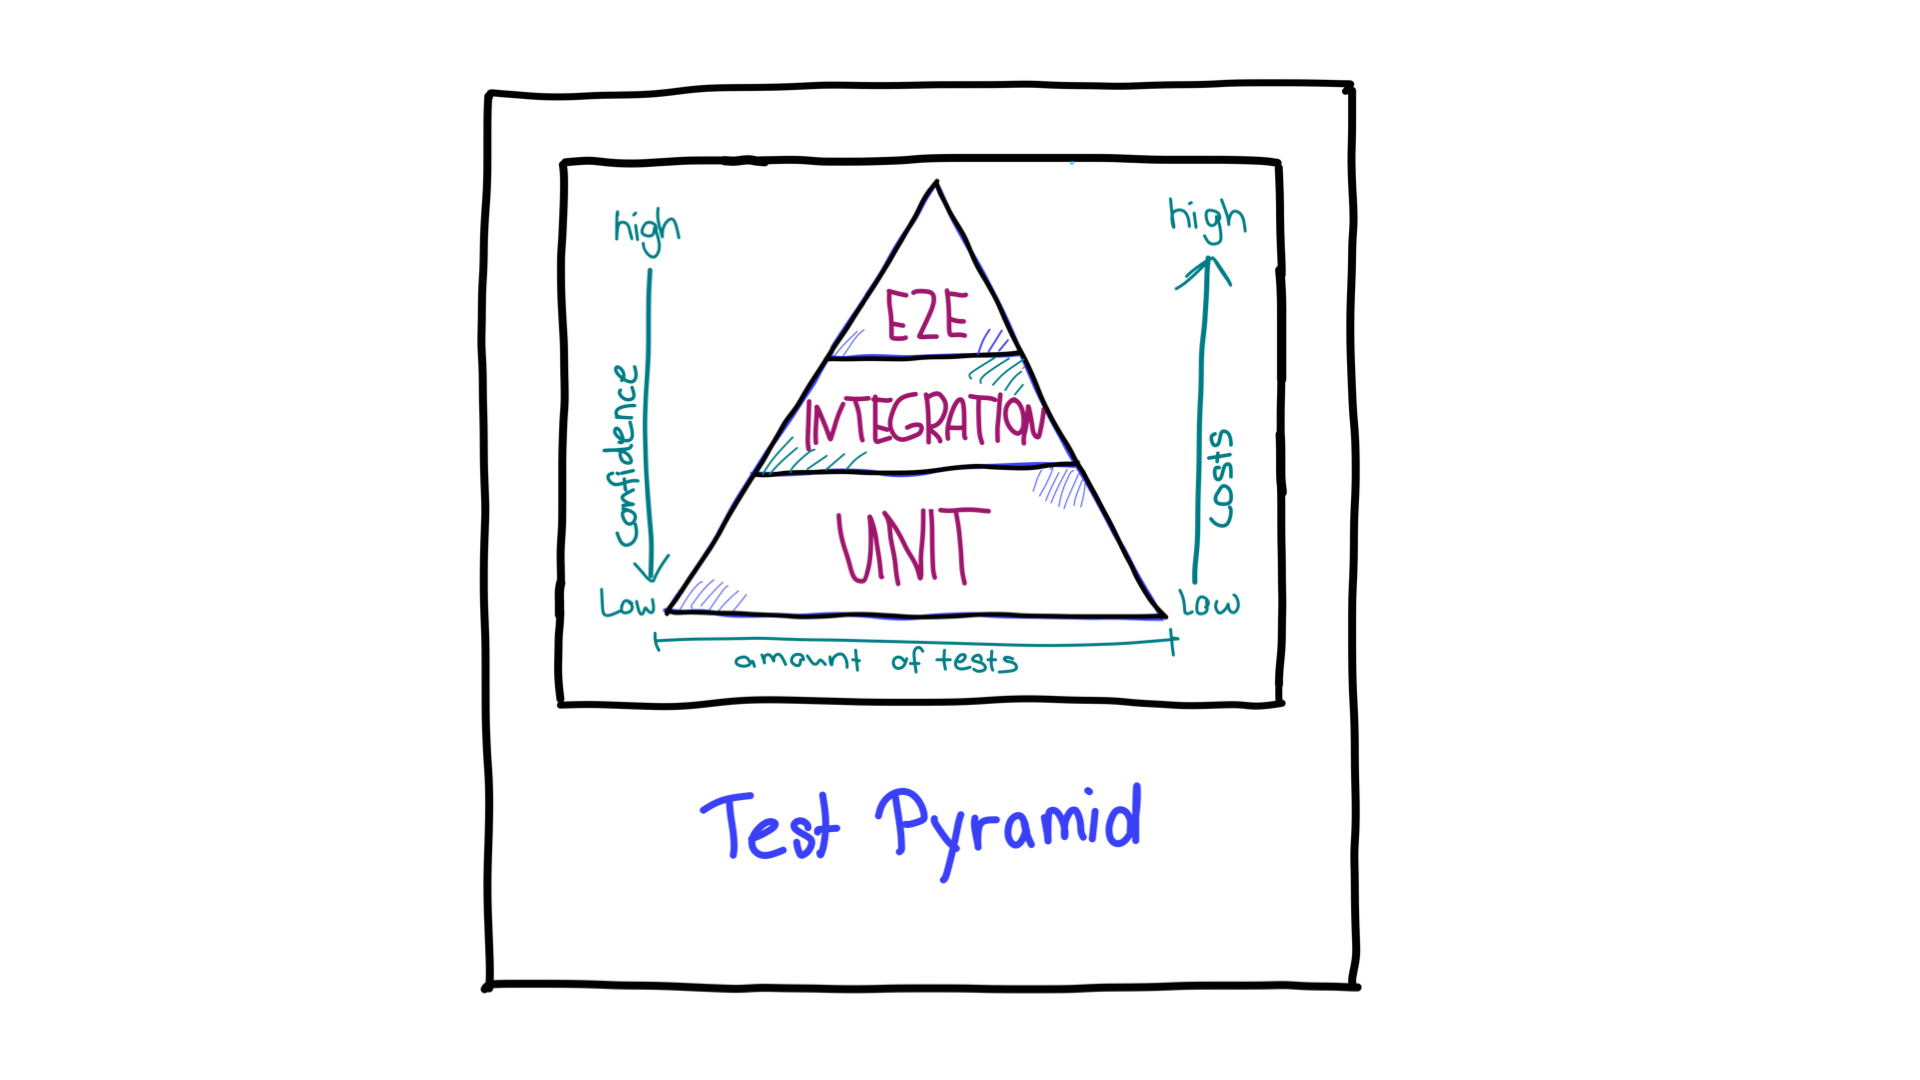 Pyramide de test avec des flèches indiquant le degré de confiance et les ressources requises pour les différents types de tests.